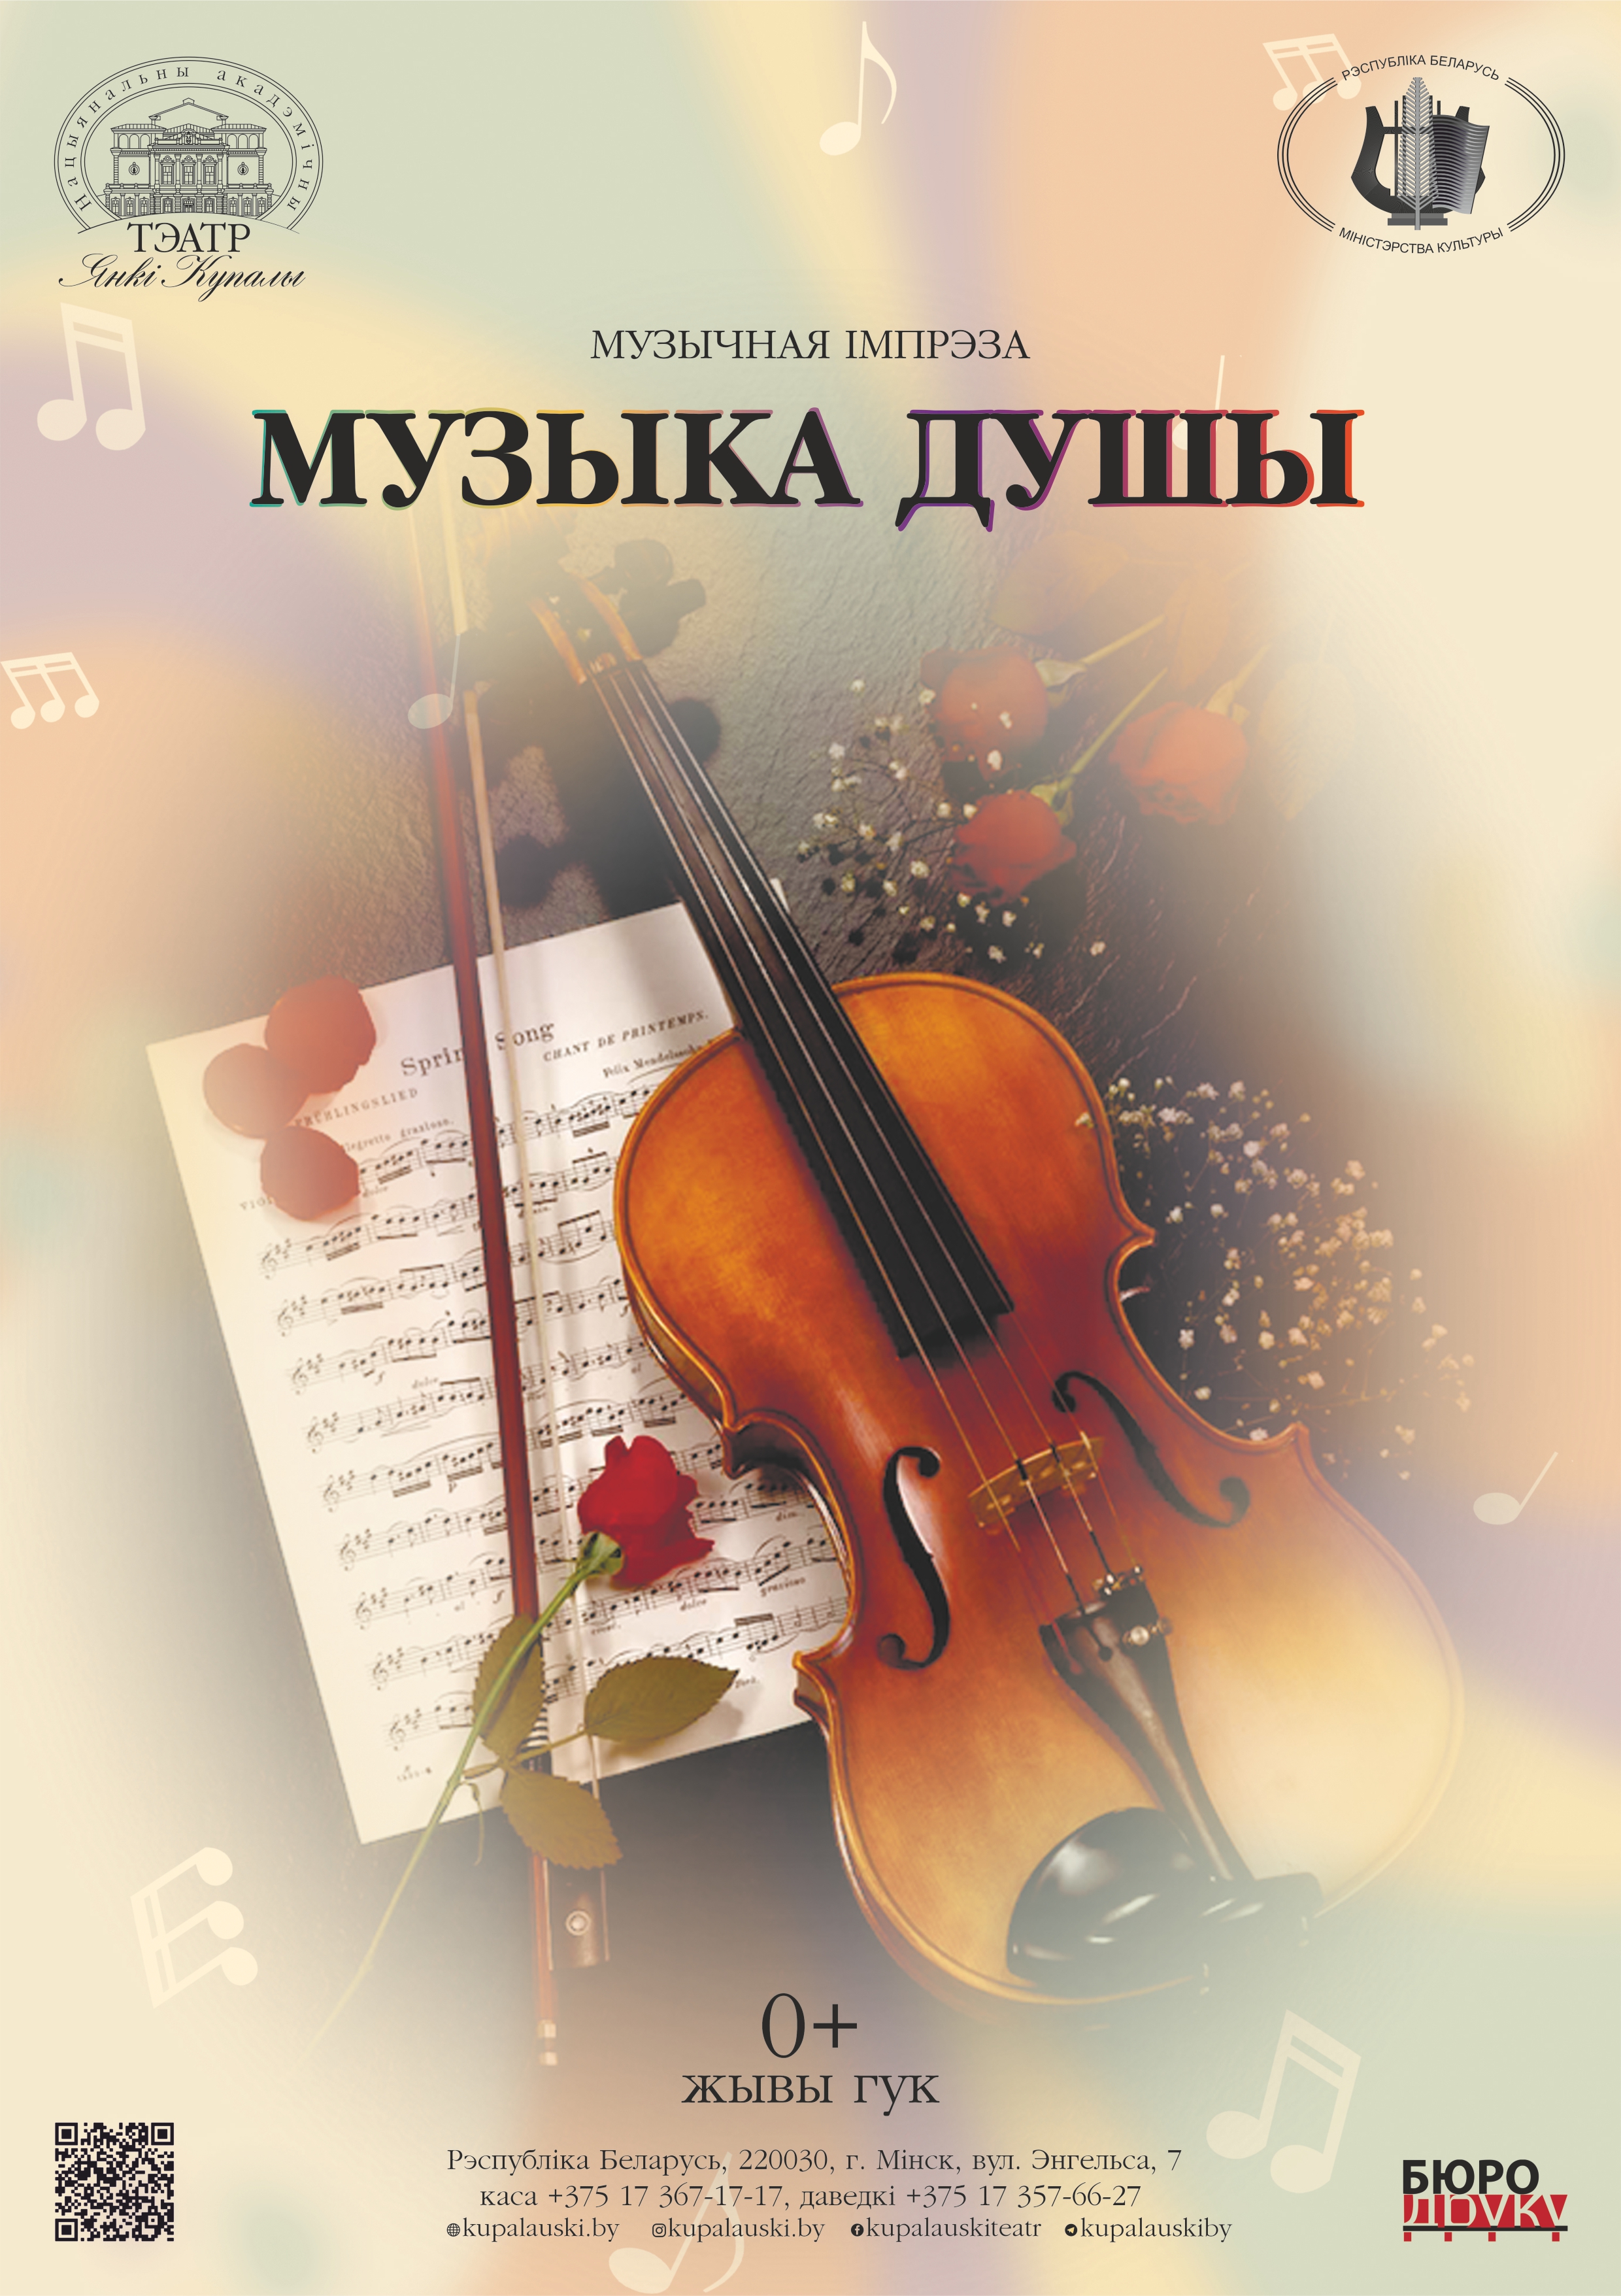 Фото - постер к Концерты Музыка душы на kudapoiti.by